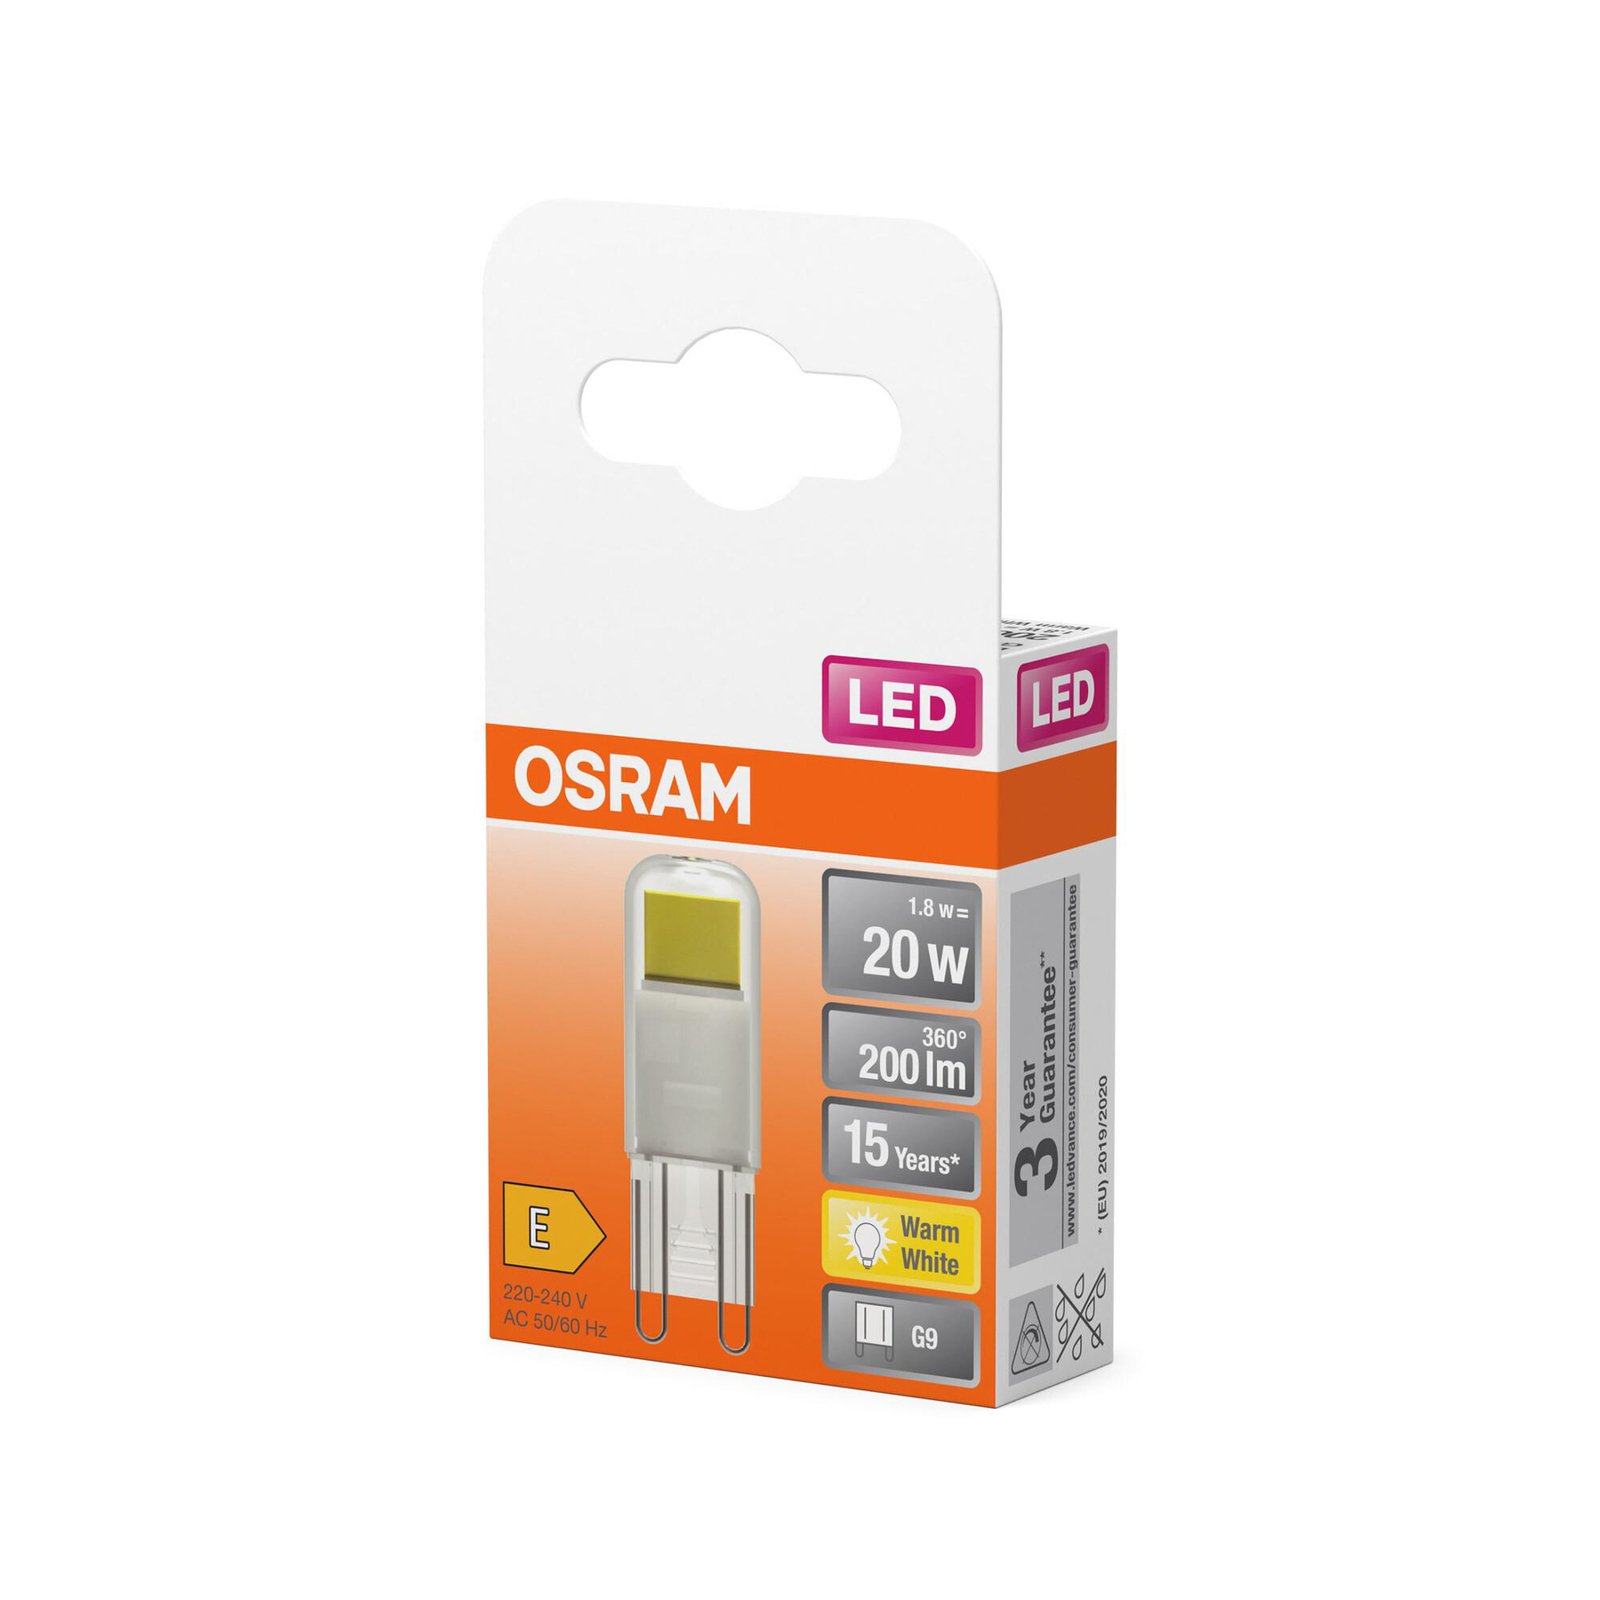 OSRAM LED postolje svjetiljke G9 1,8 W prozirno 2700 K